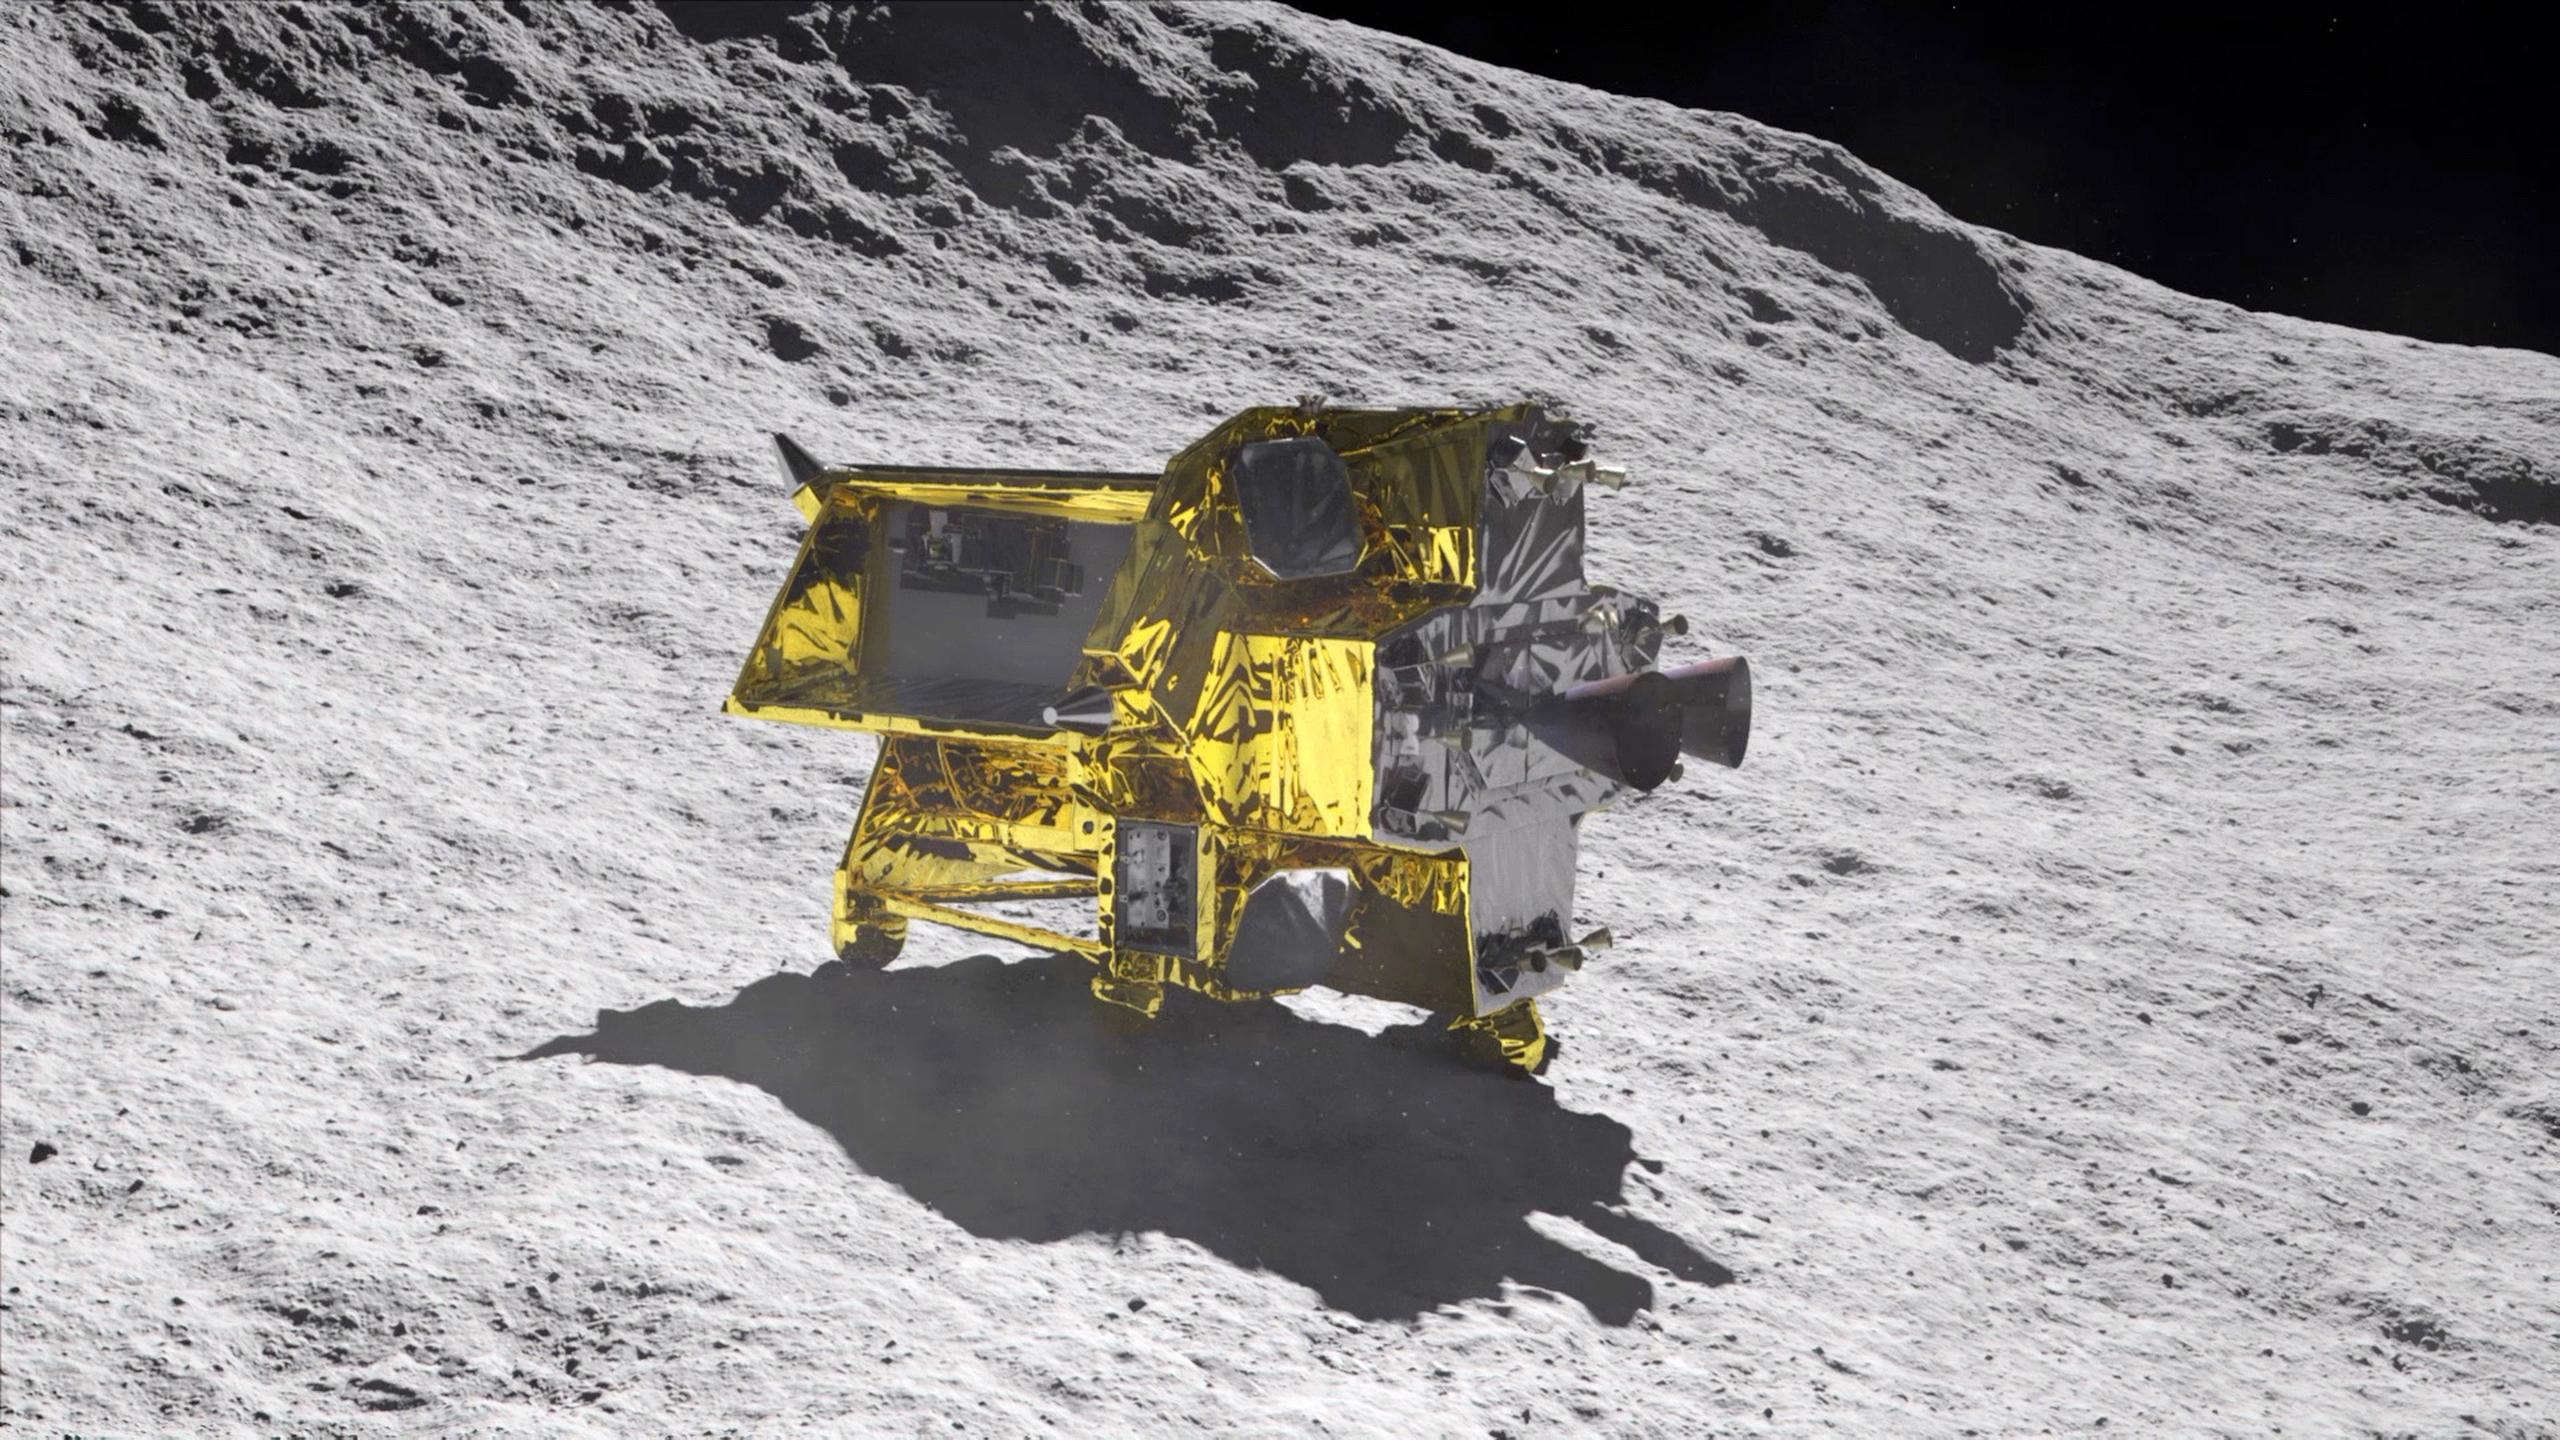 En torno a la medianoche en Japón y cuando se encontraba a unos 15 kilómetros de la superficie lunar, el SLIM comenzó a bajar y escanear el terreno con sus detectores de obstáculos autónomos.